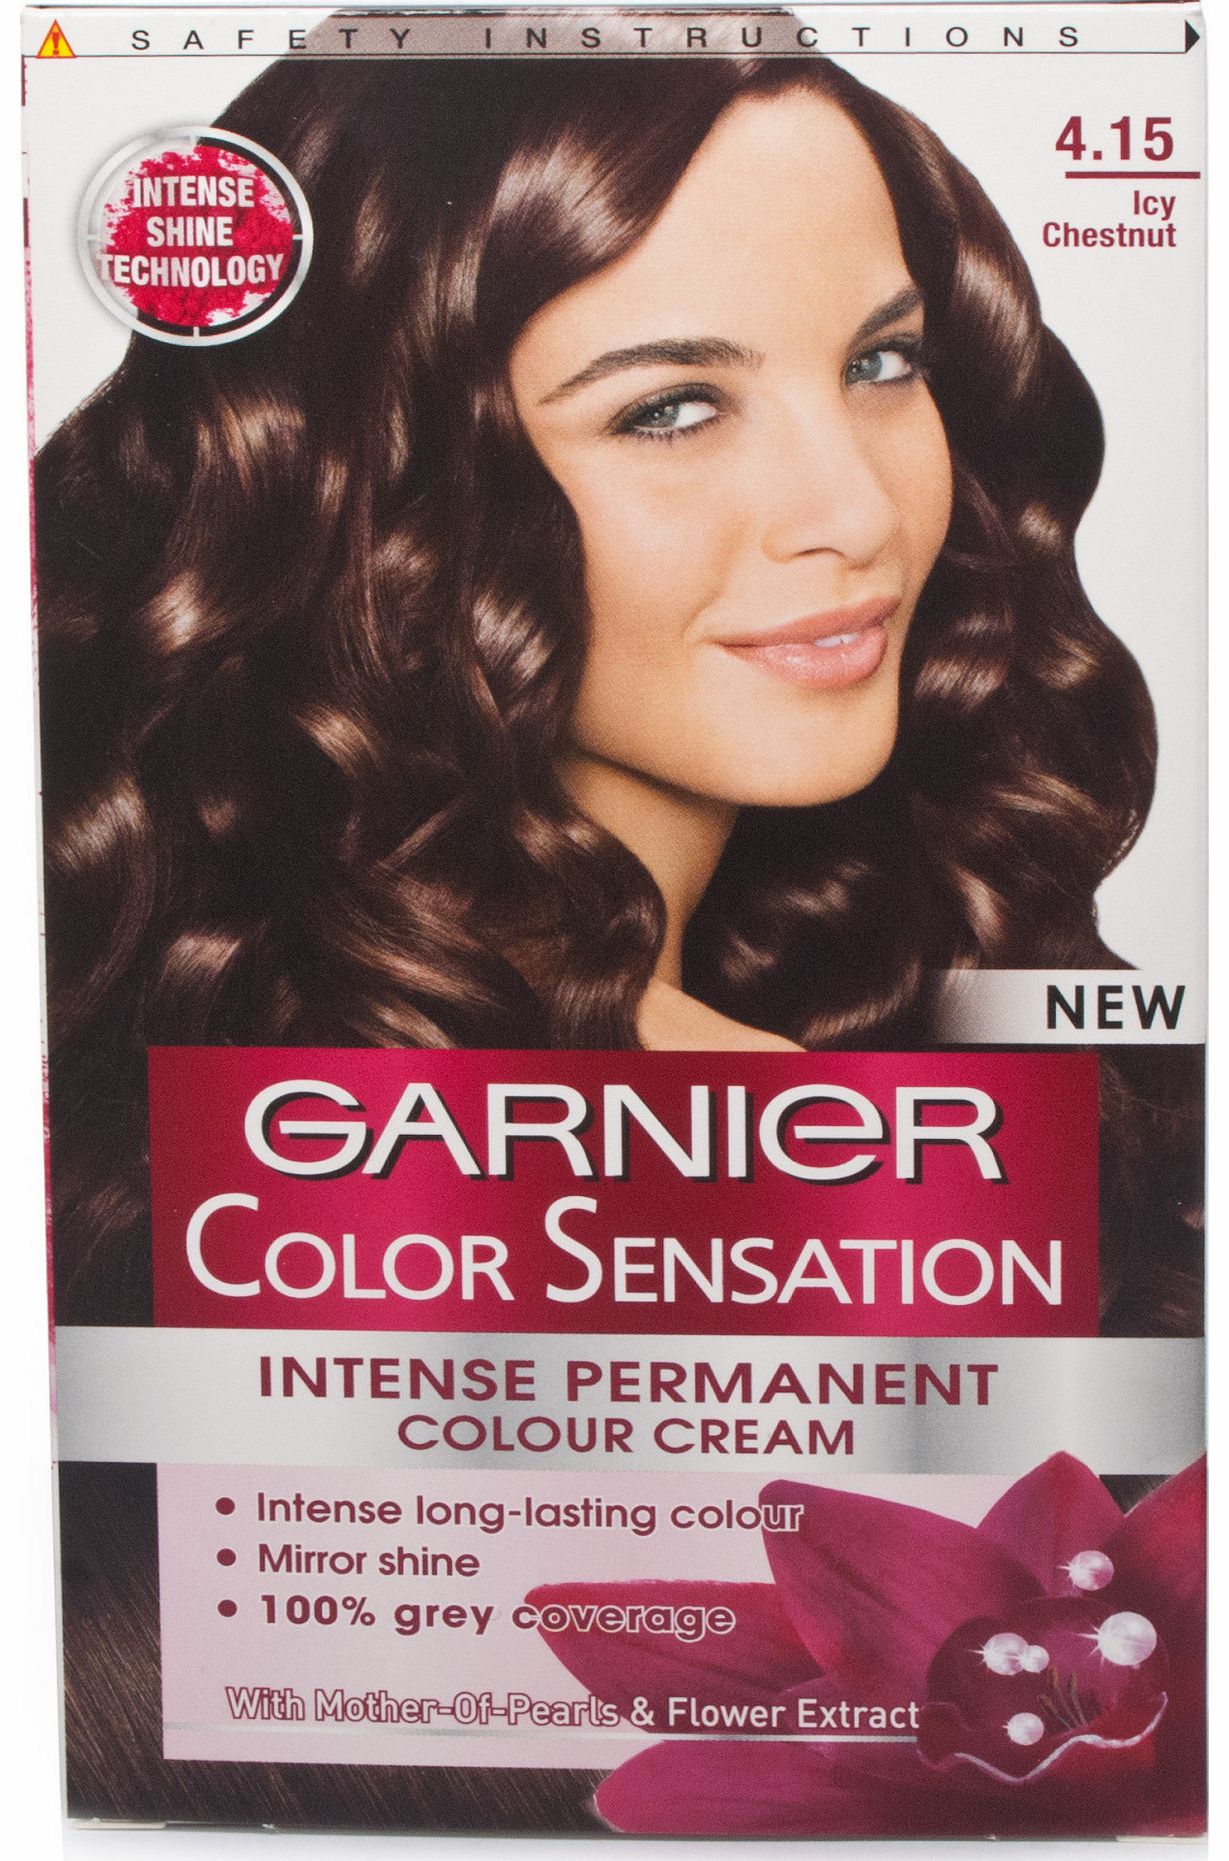 Garnier Colour Sensation 4.15 Icy Chestnut